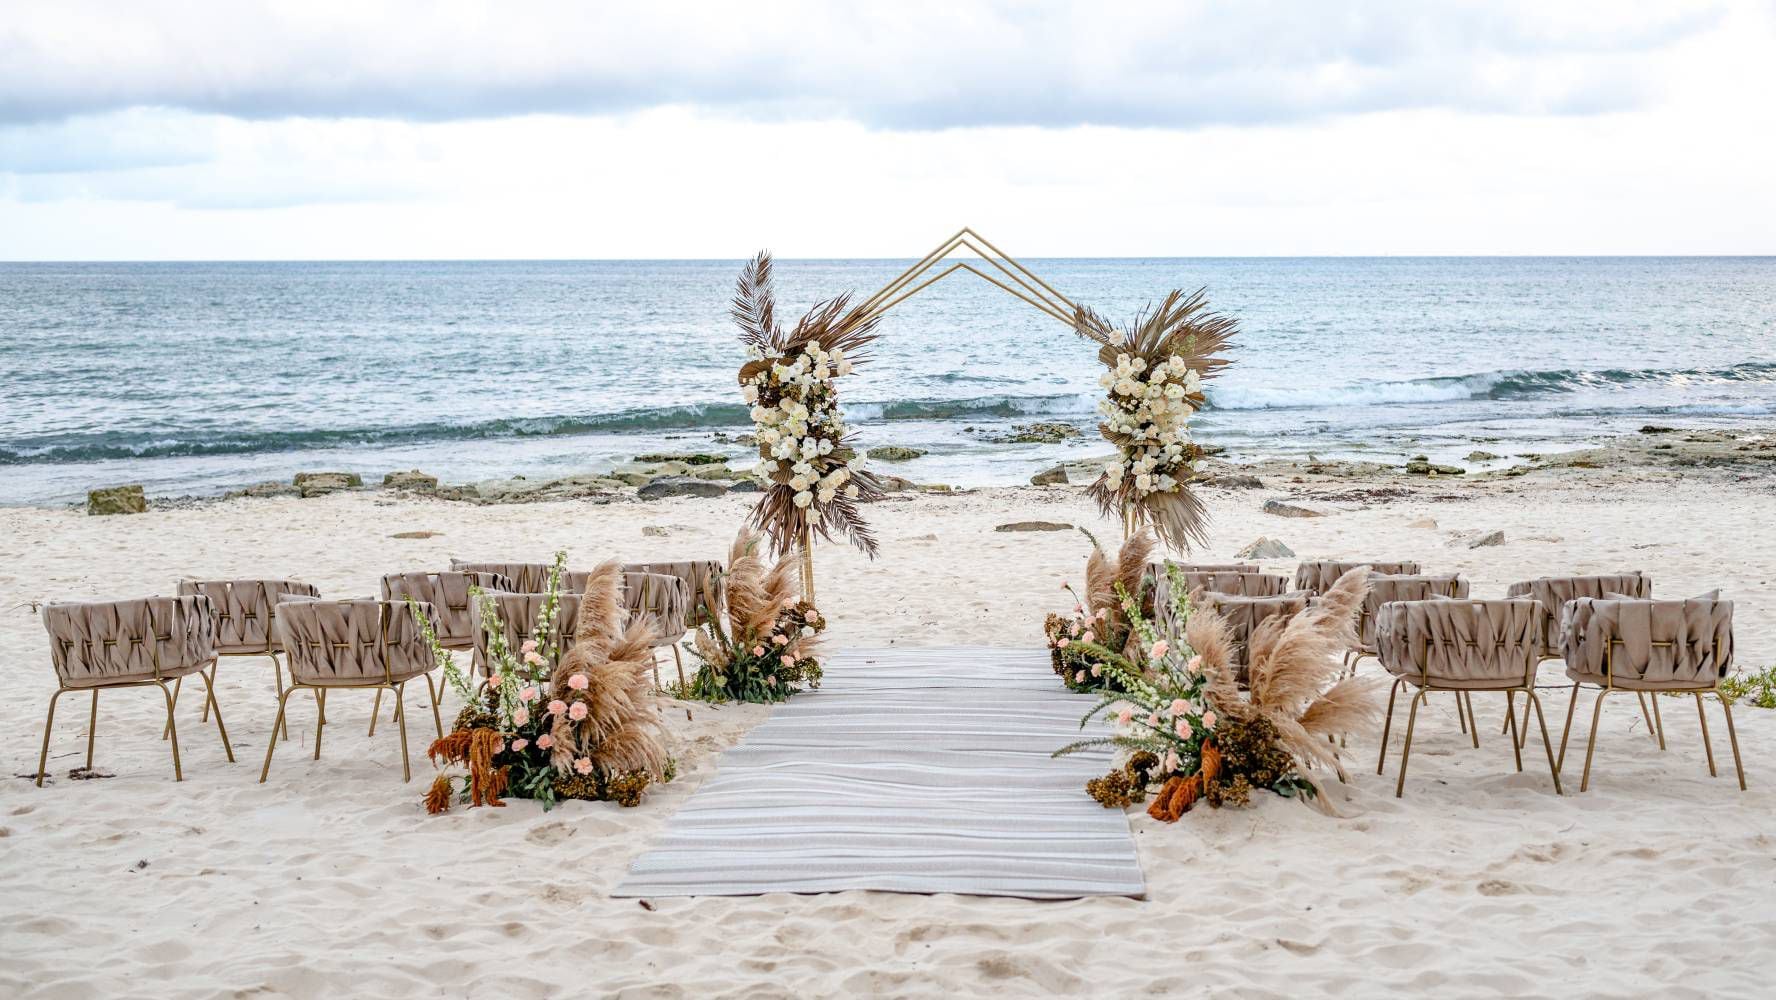 Este hotel boutique con vista al mar promete personalizar sus servicios, desde un espacio para pedir matrimonio a bodas frente a la playa. (Foto: Cortesía / The Beachfront by The Fives Hotels).